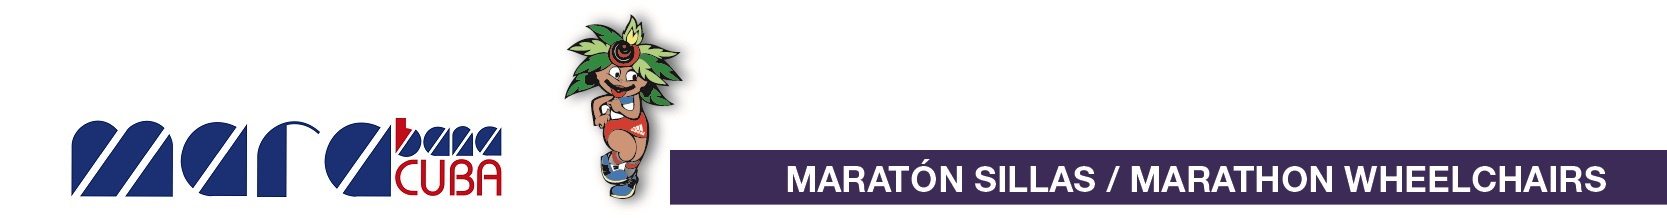 Marabana 2019 - Maratón en Silla de Ruedas